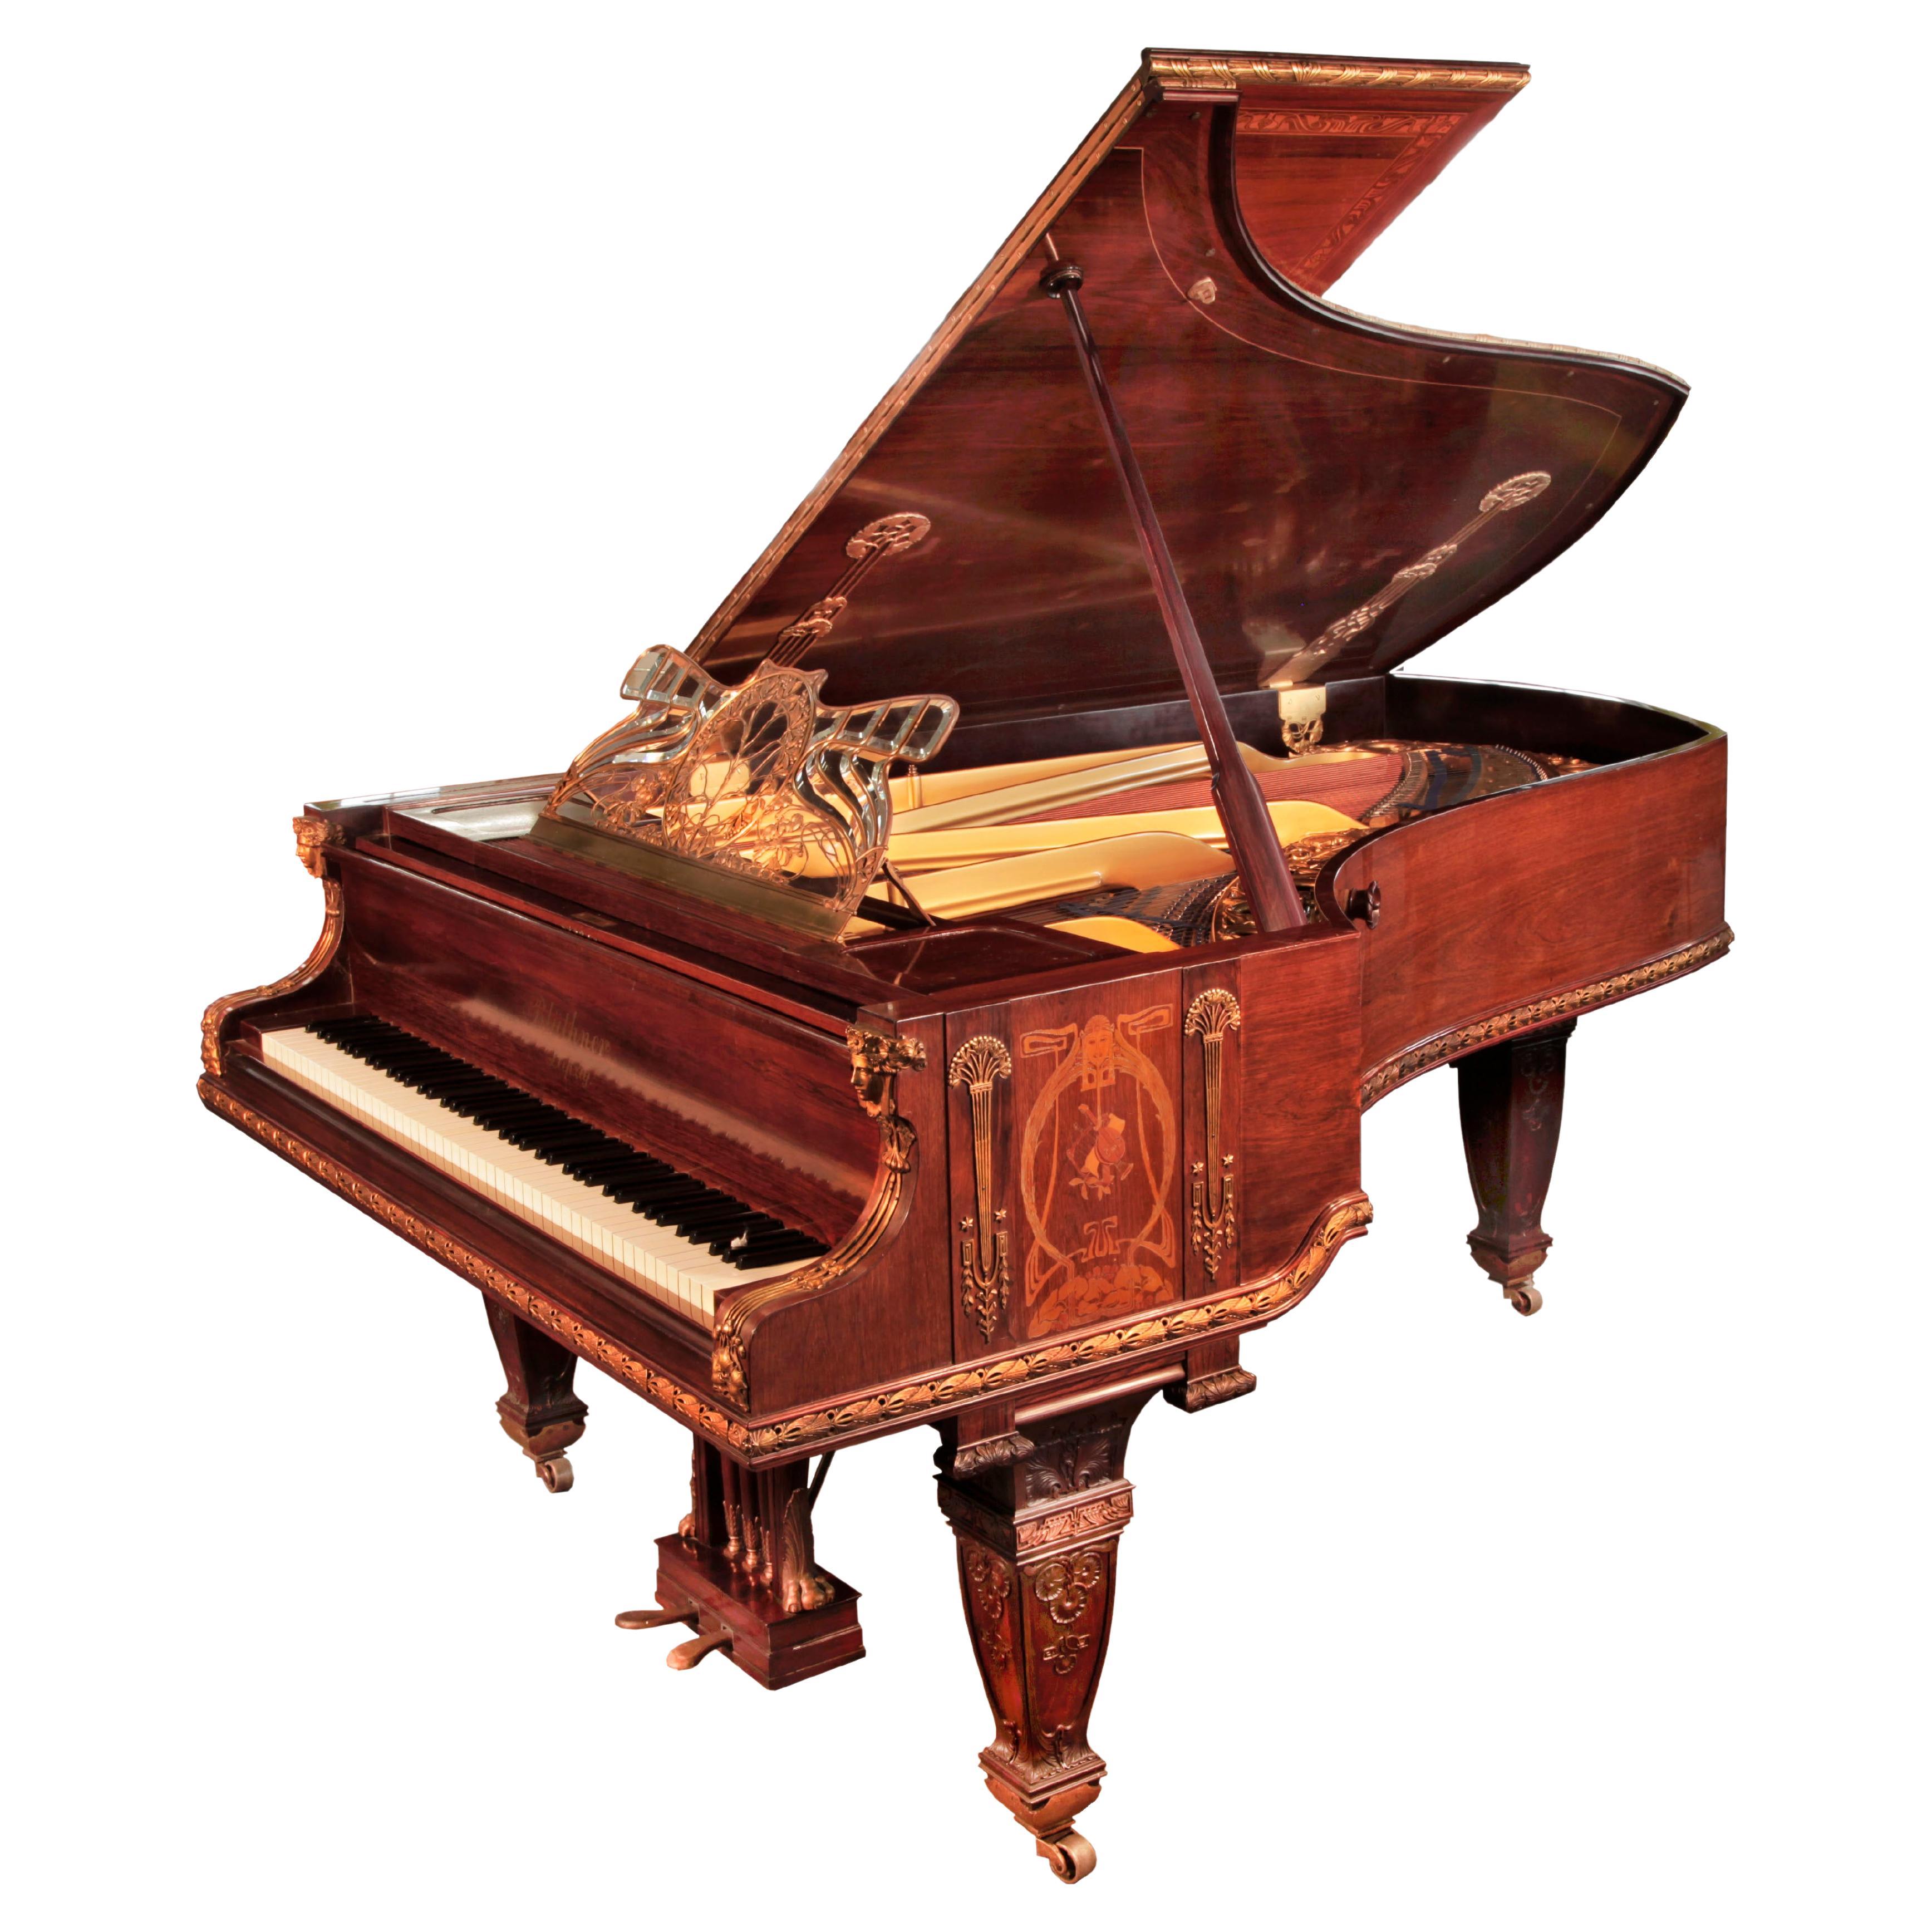 Le piano Royal Bluthner du roi Édouard VII a été exposé à l'exposition de Paris en 1900